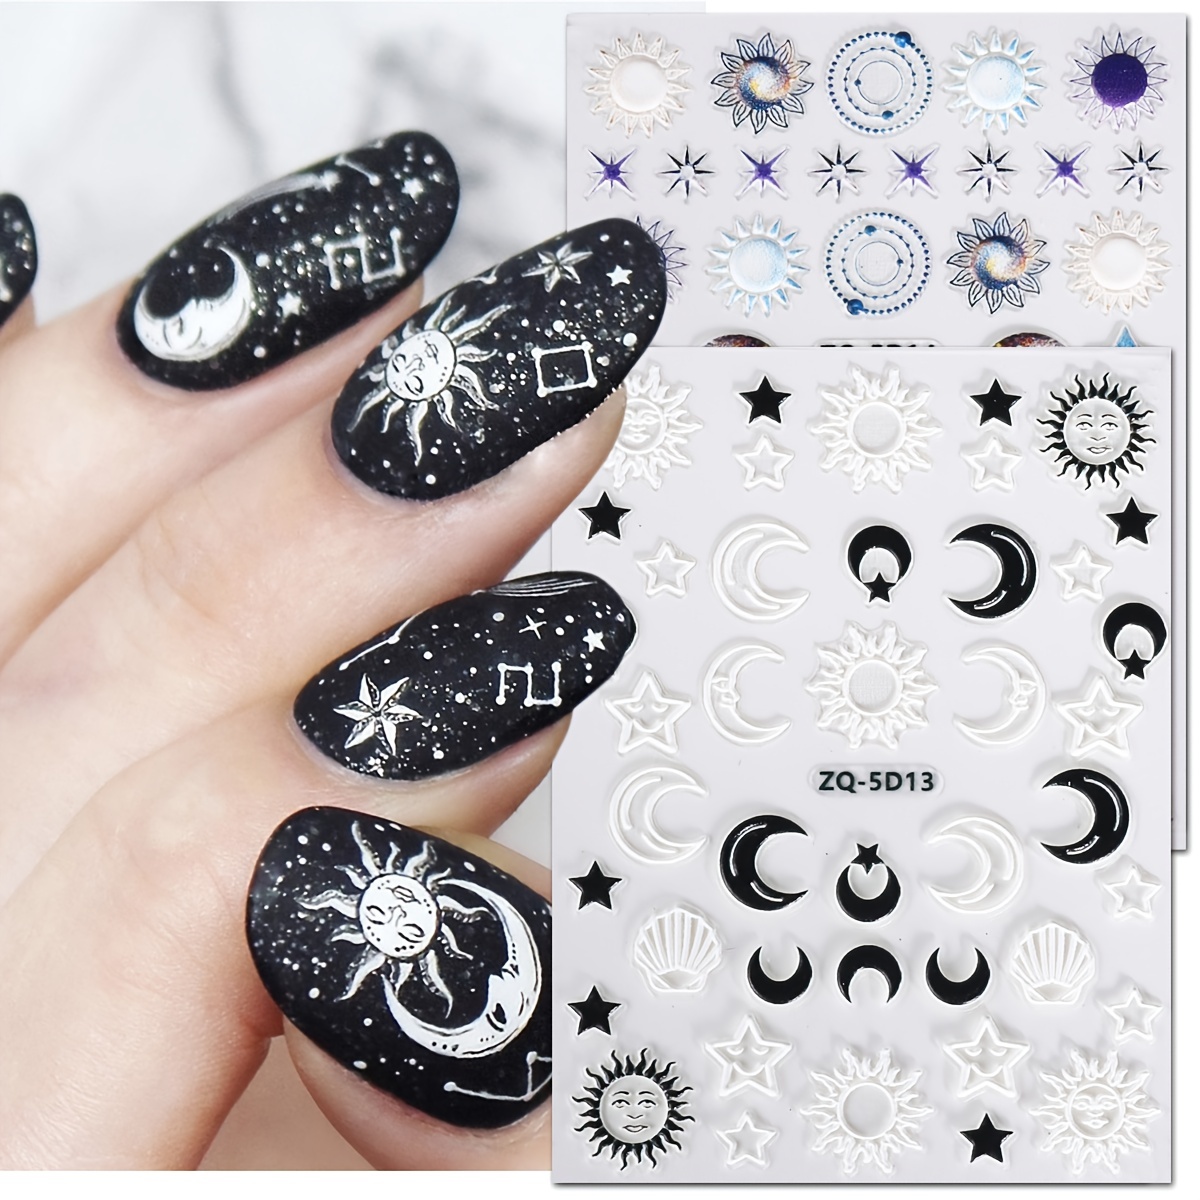 Pastel star nails | Stylish nails, Nail designs, Gel nails